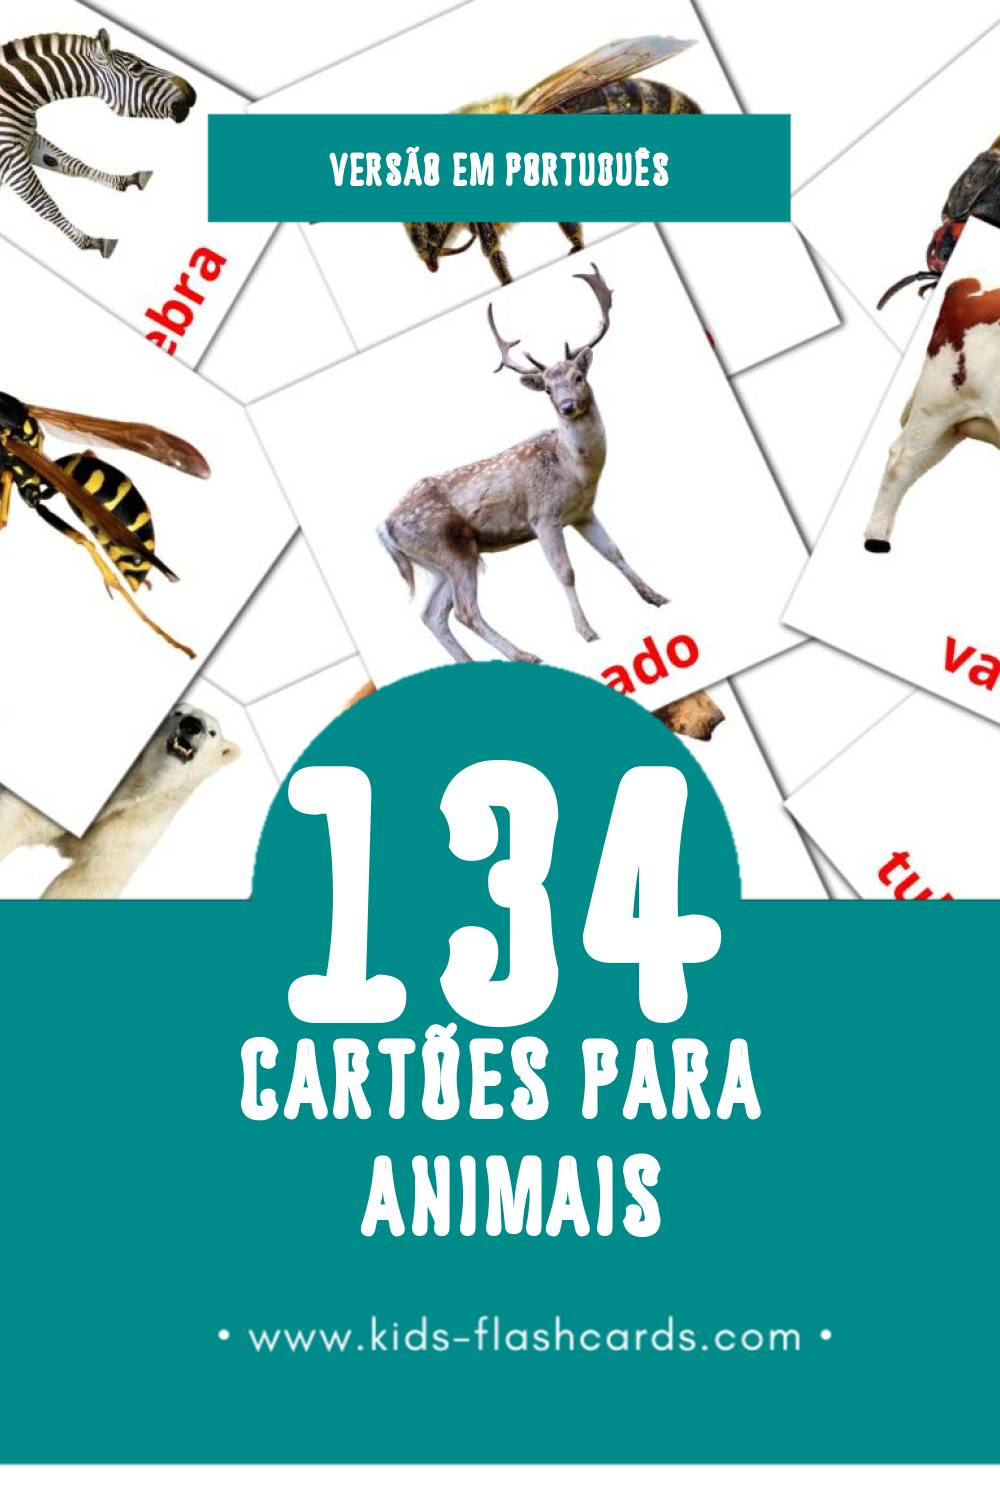 Flashcards de Animais Visuais para Toddlers (134 cartões em Português)